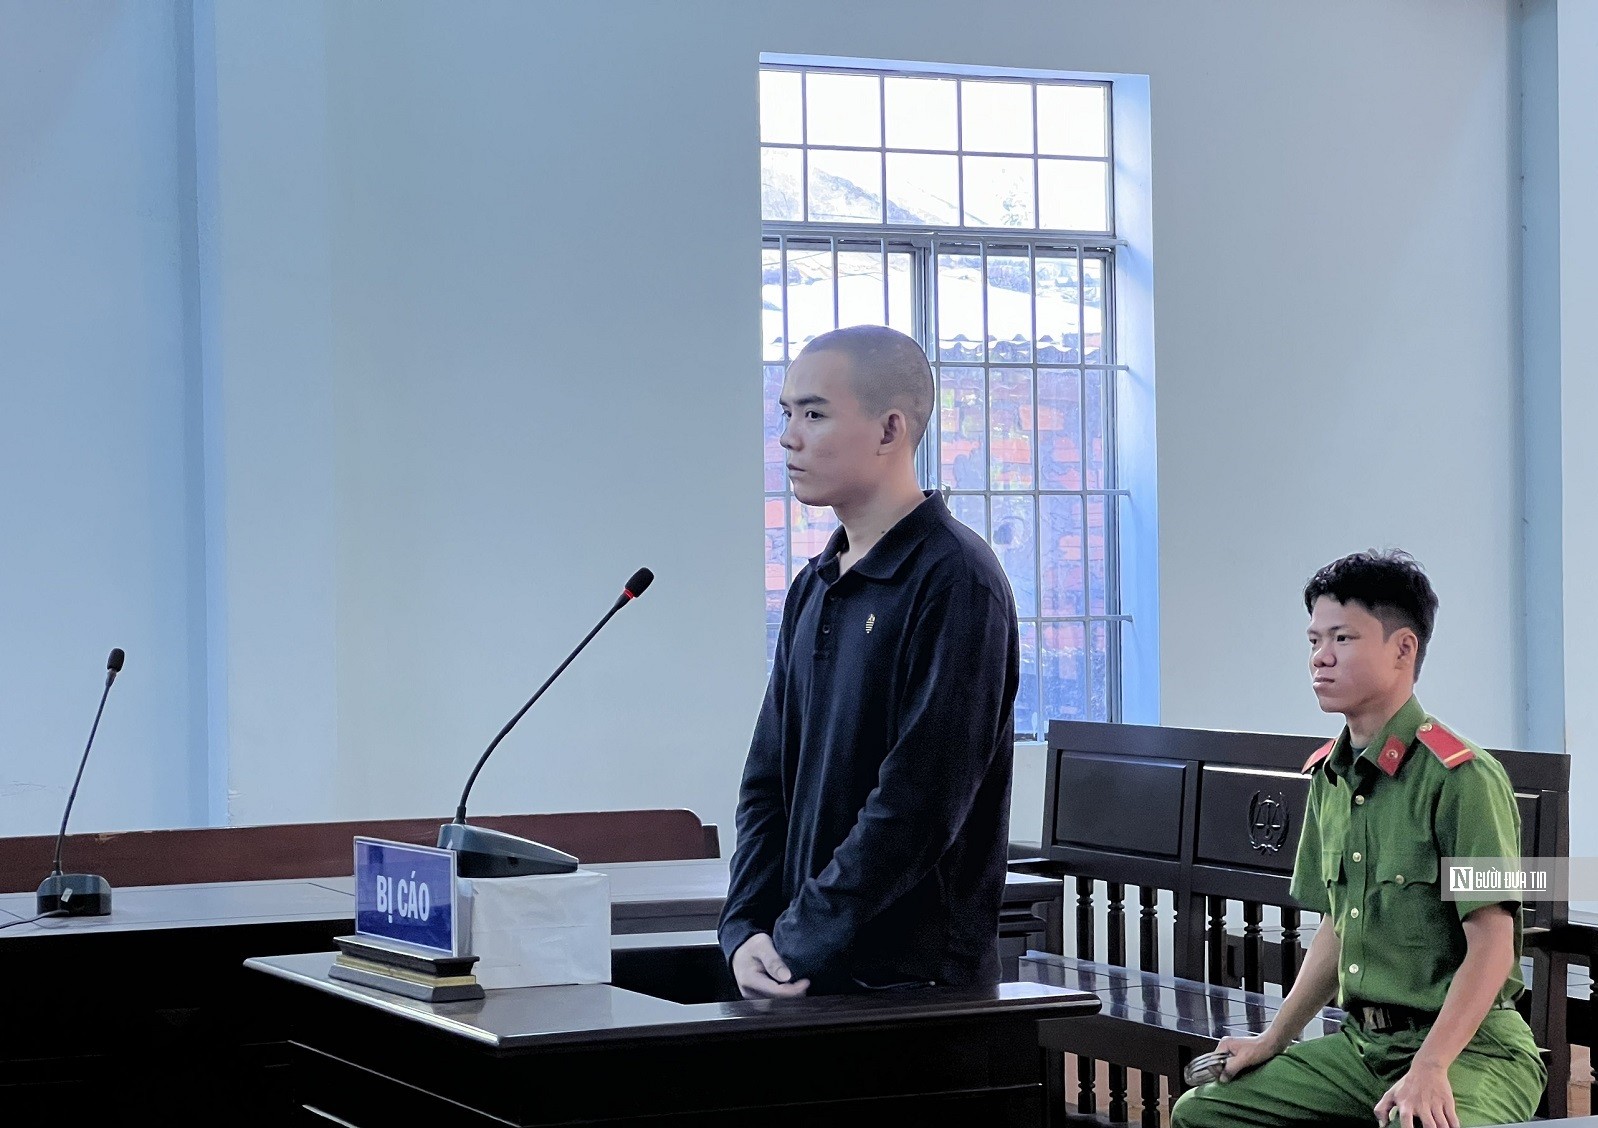 Hồ sơ điều tra - Bình Thuận: Kẻ chuyên cướp giật điện thoại người đi đường lãnh án tù